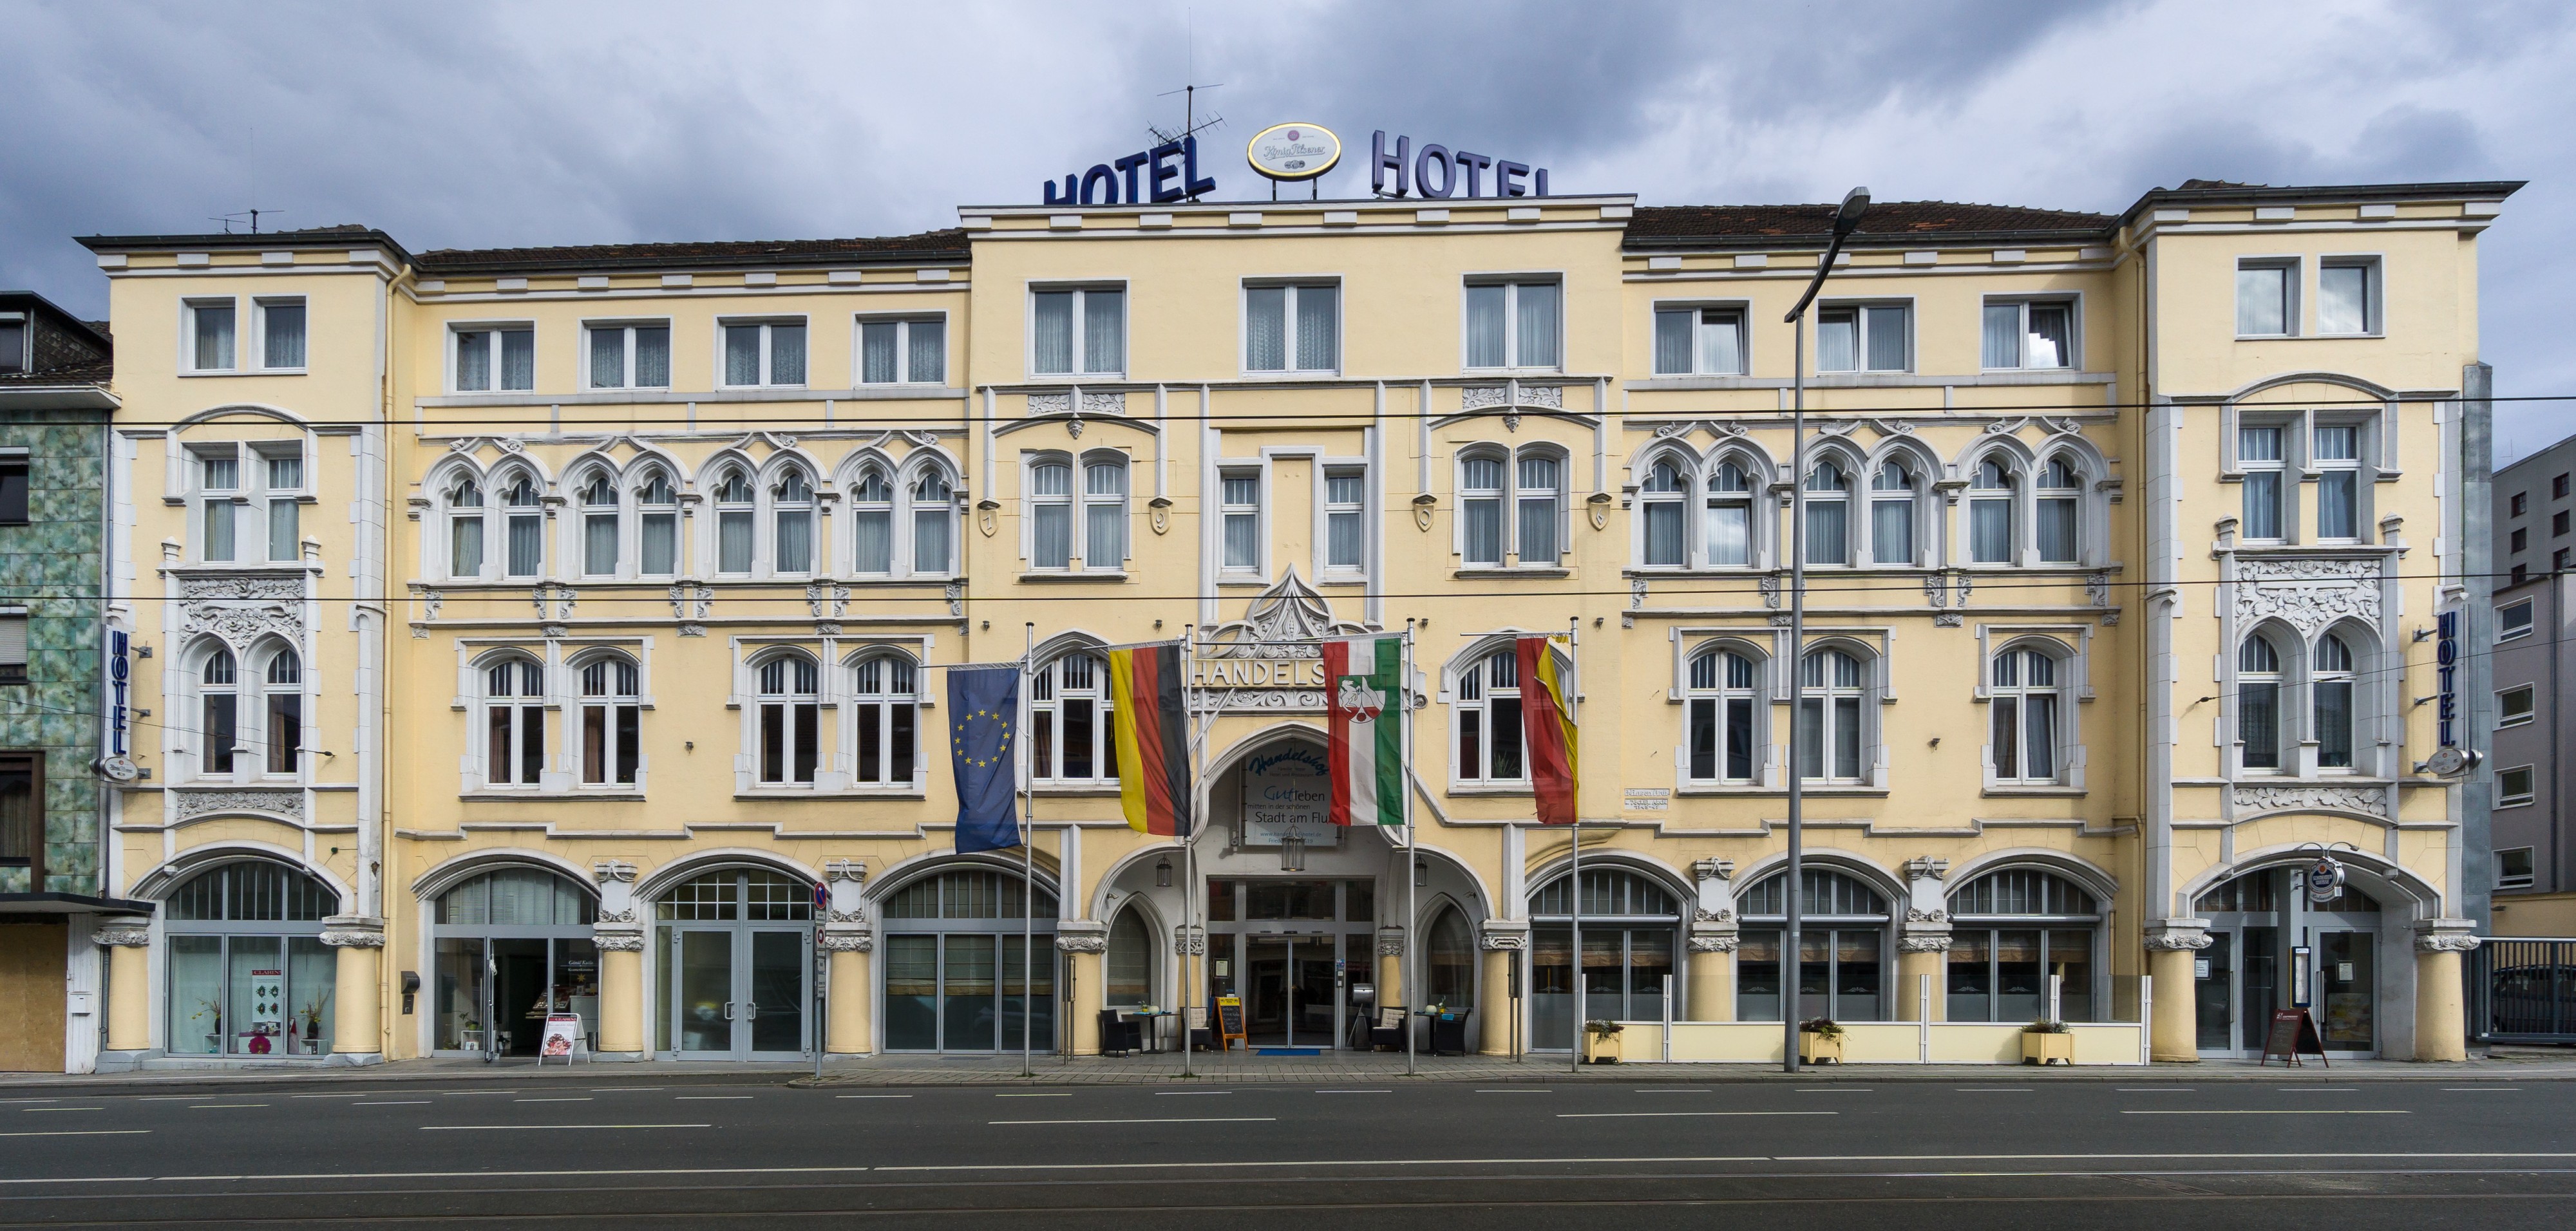 Hotel-Handelshof-Muelheim-2016